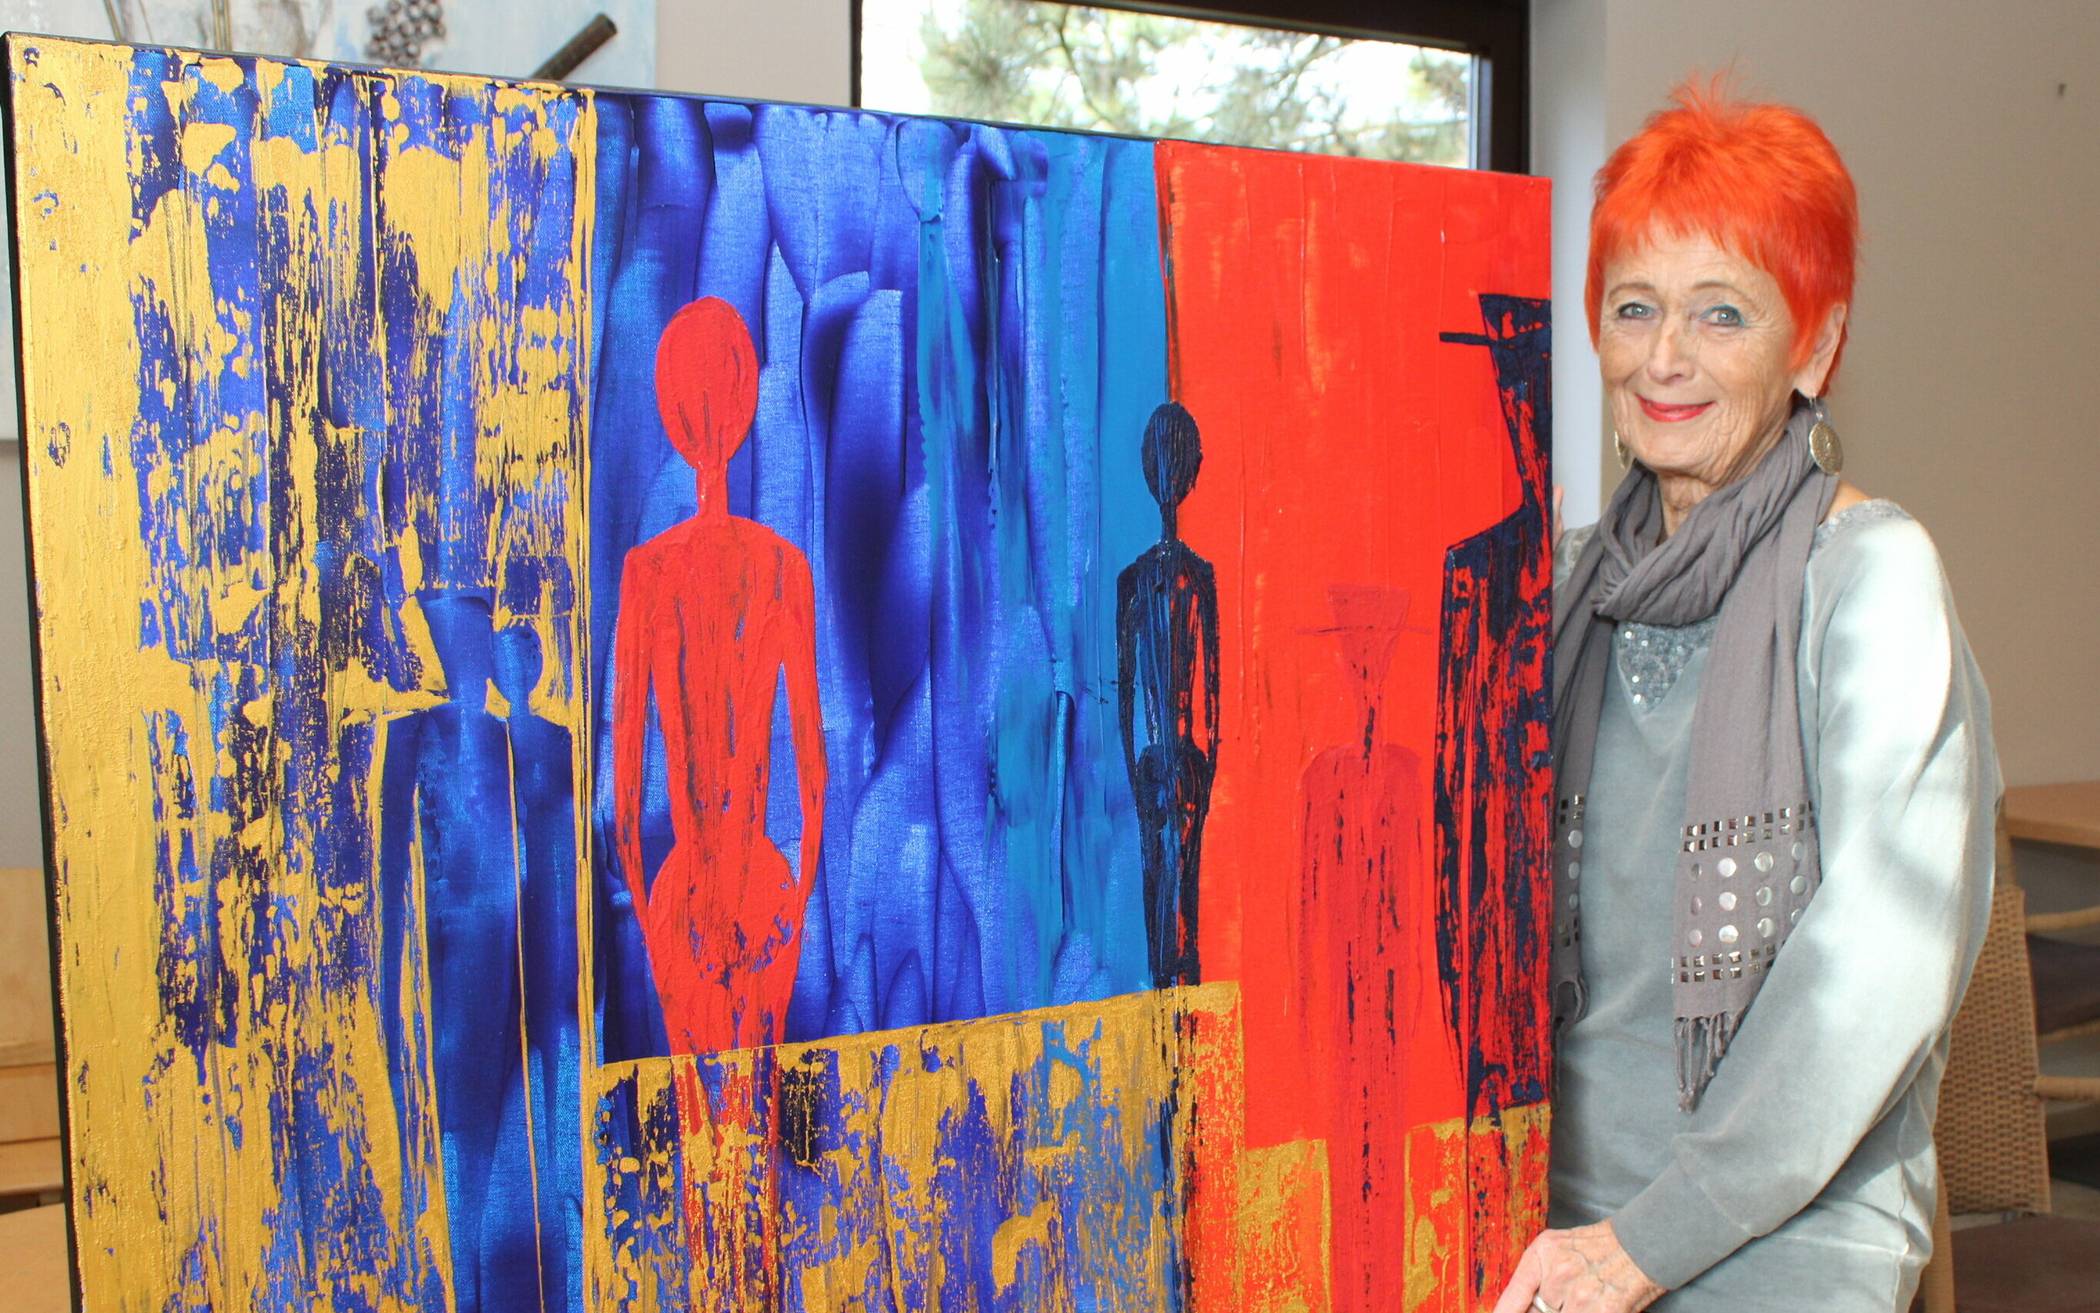  Brigitte Bruns liebt intensive Farben. 